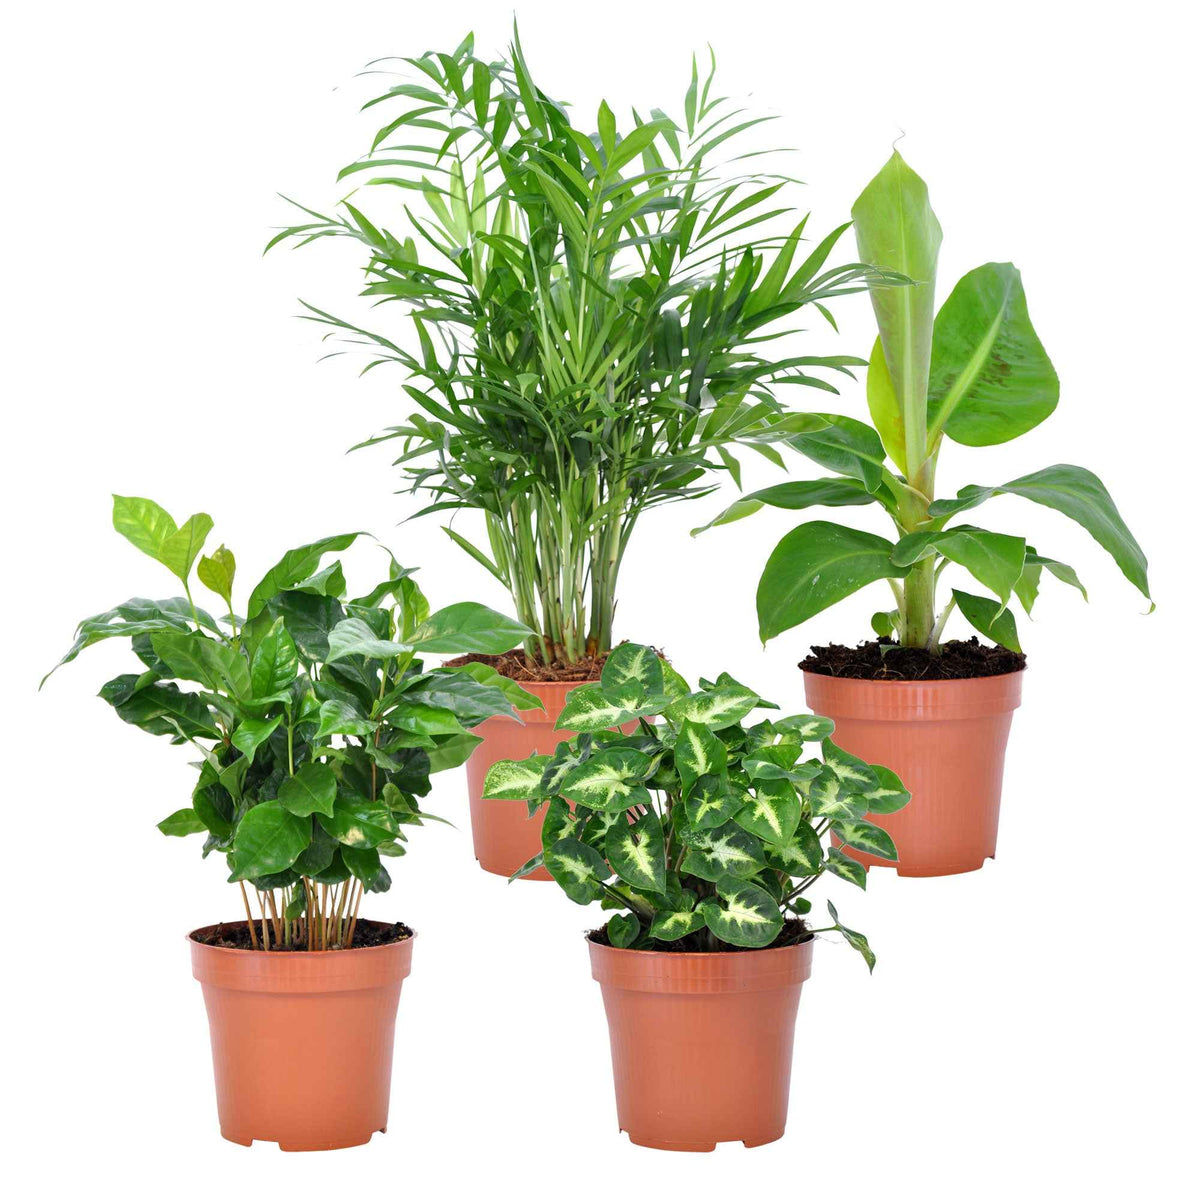 Collection de 4 plantes d'intérieur tropicales + 4 cache pots Elho gris - Chamaedorea elegans, Arum syngonium, Musa, Coffea arabica - Plantes